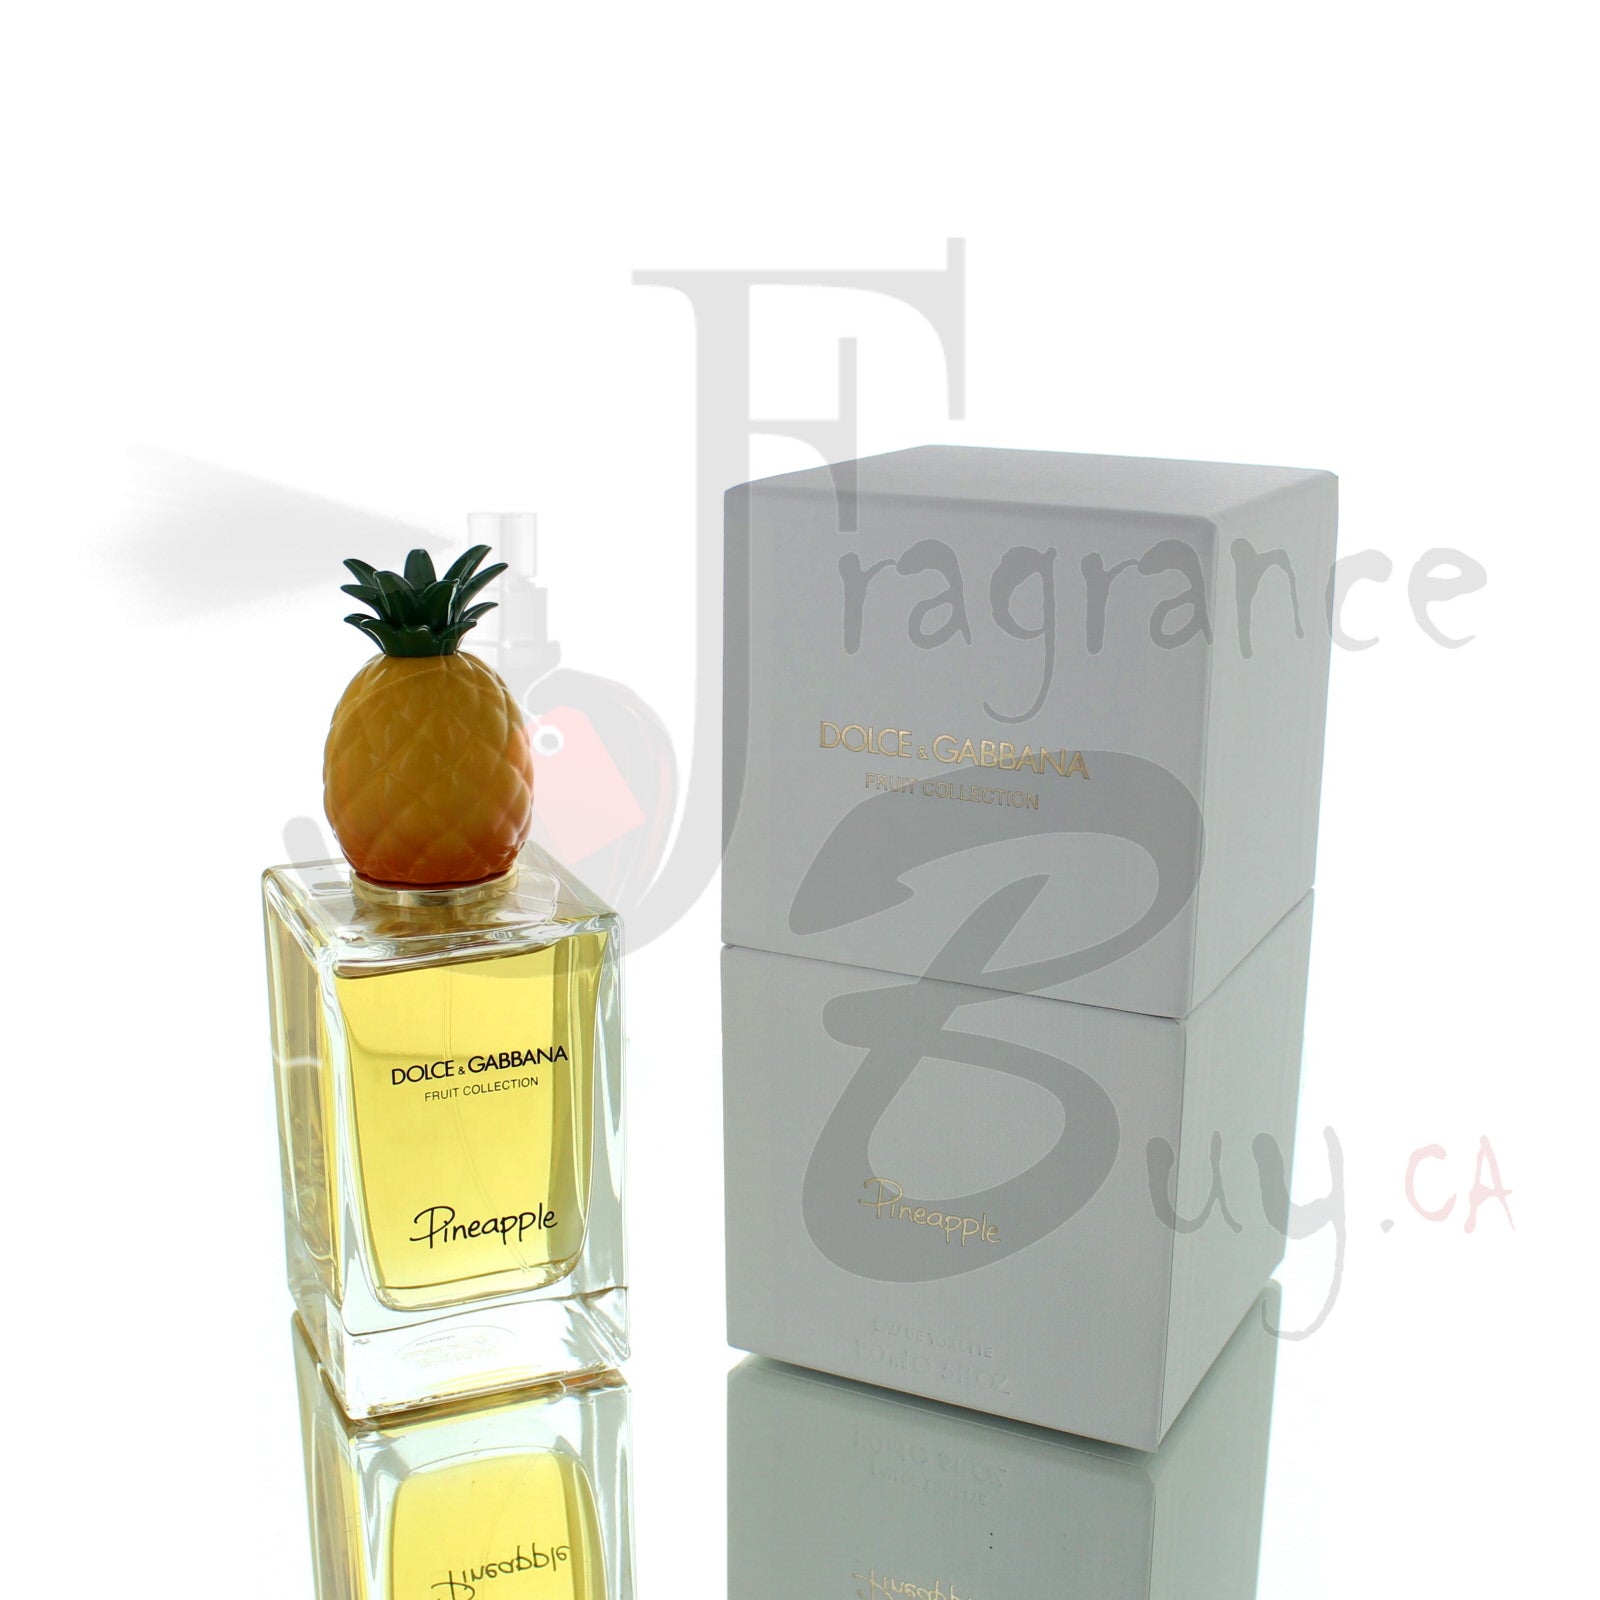  — Dolce & Gabbana Velvet Fruit Pineapple | Best Price,  Fragrance Buy